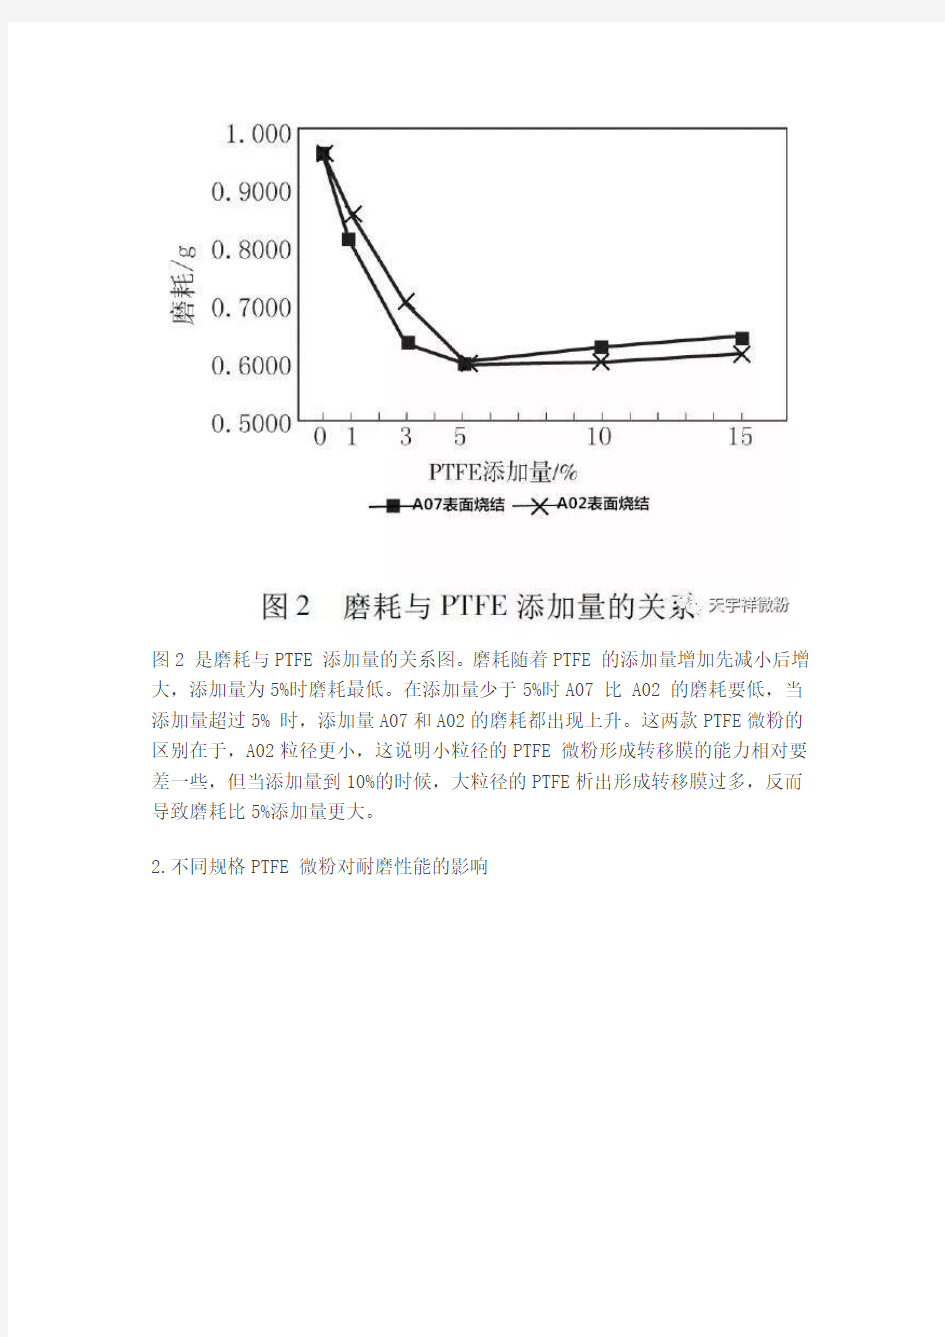 PTFE微粉对改性ABS耐磨性能的影响